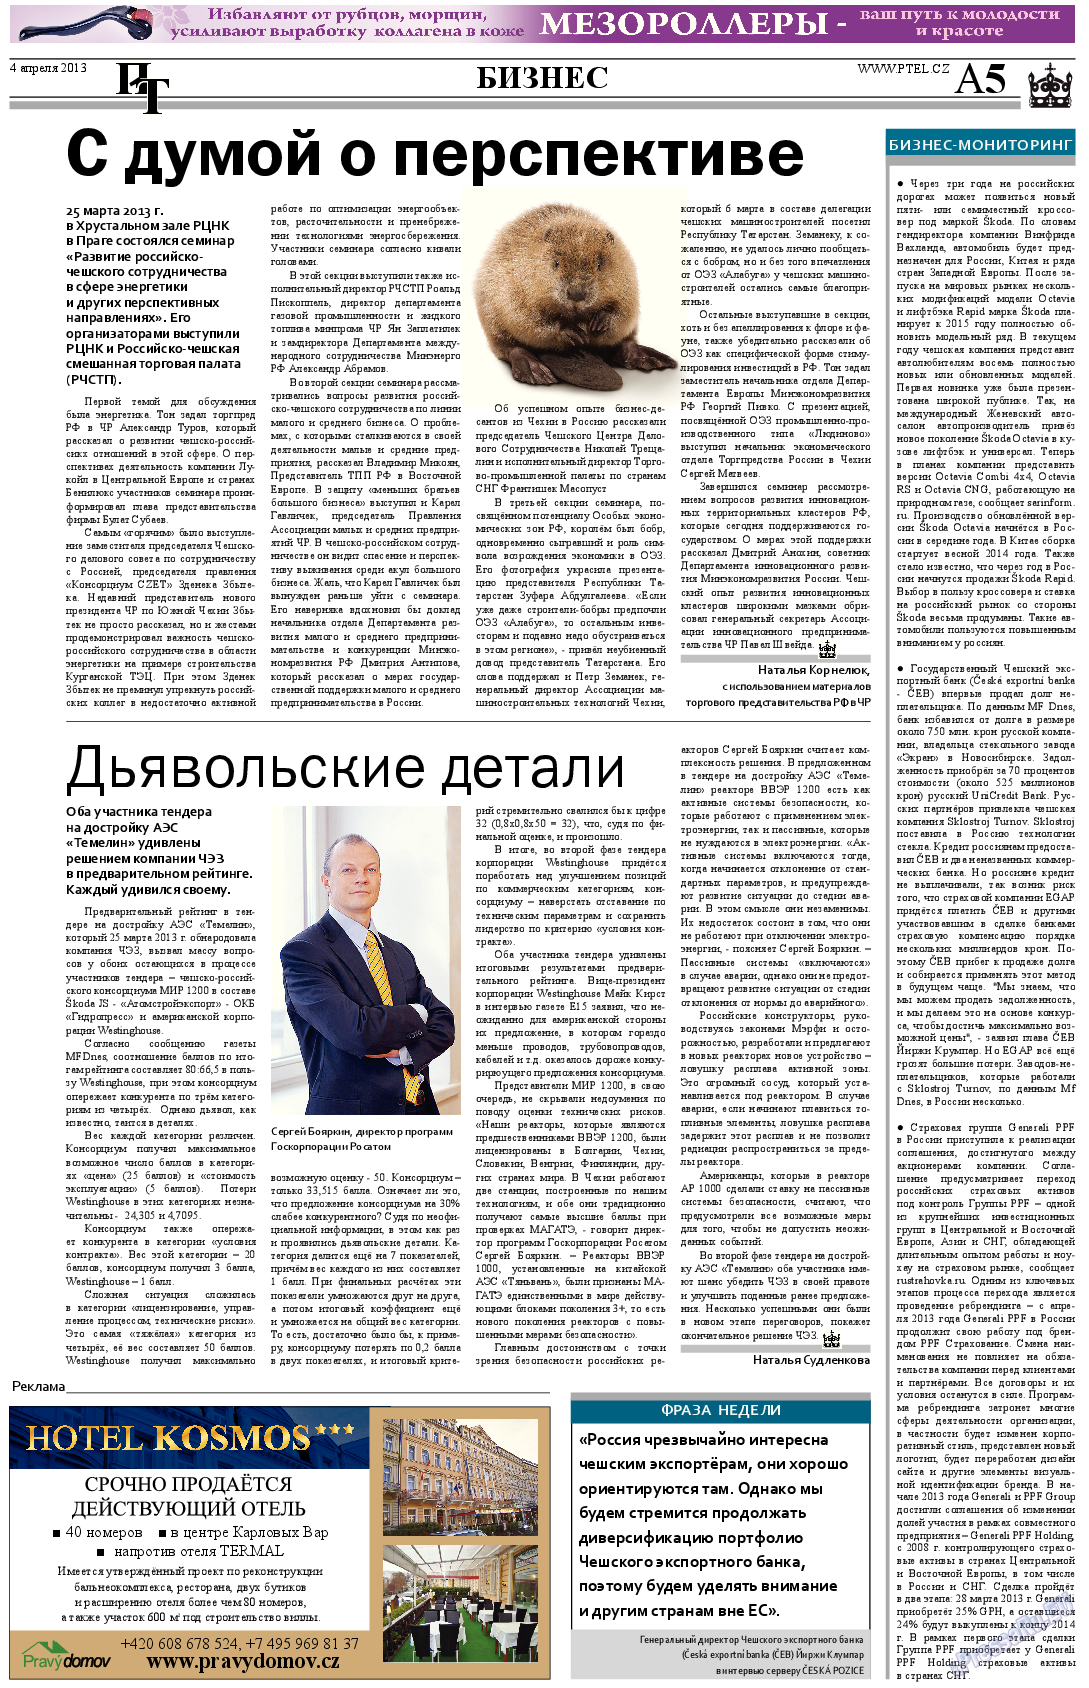 Пражский телеграф (газета). 2013 год, номер 13, стр. 5